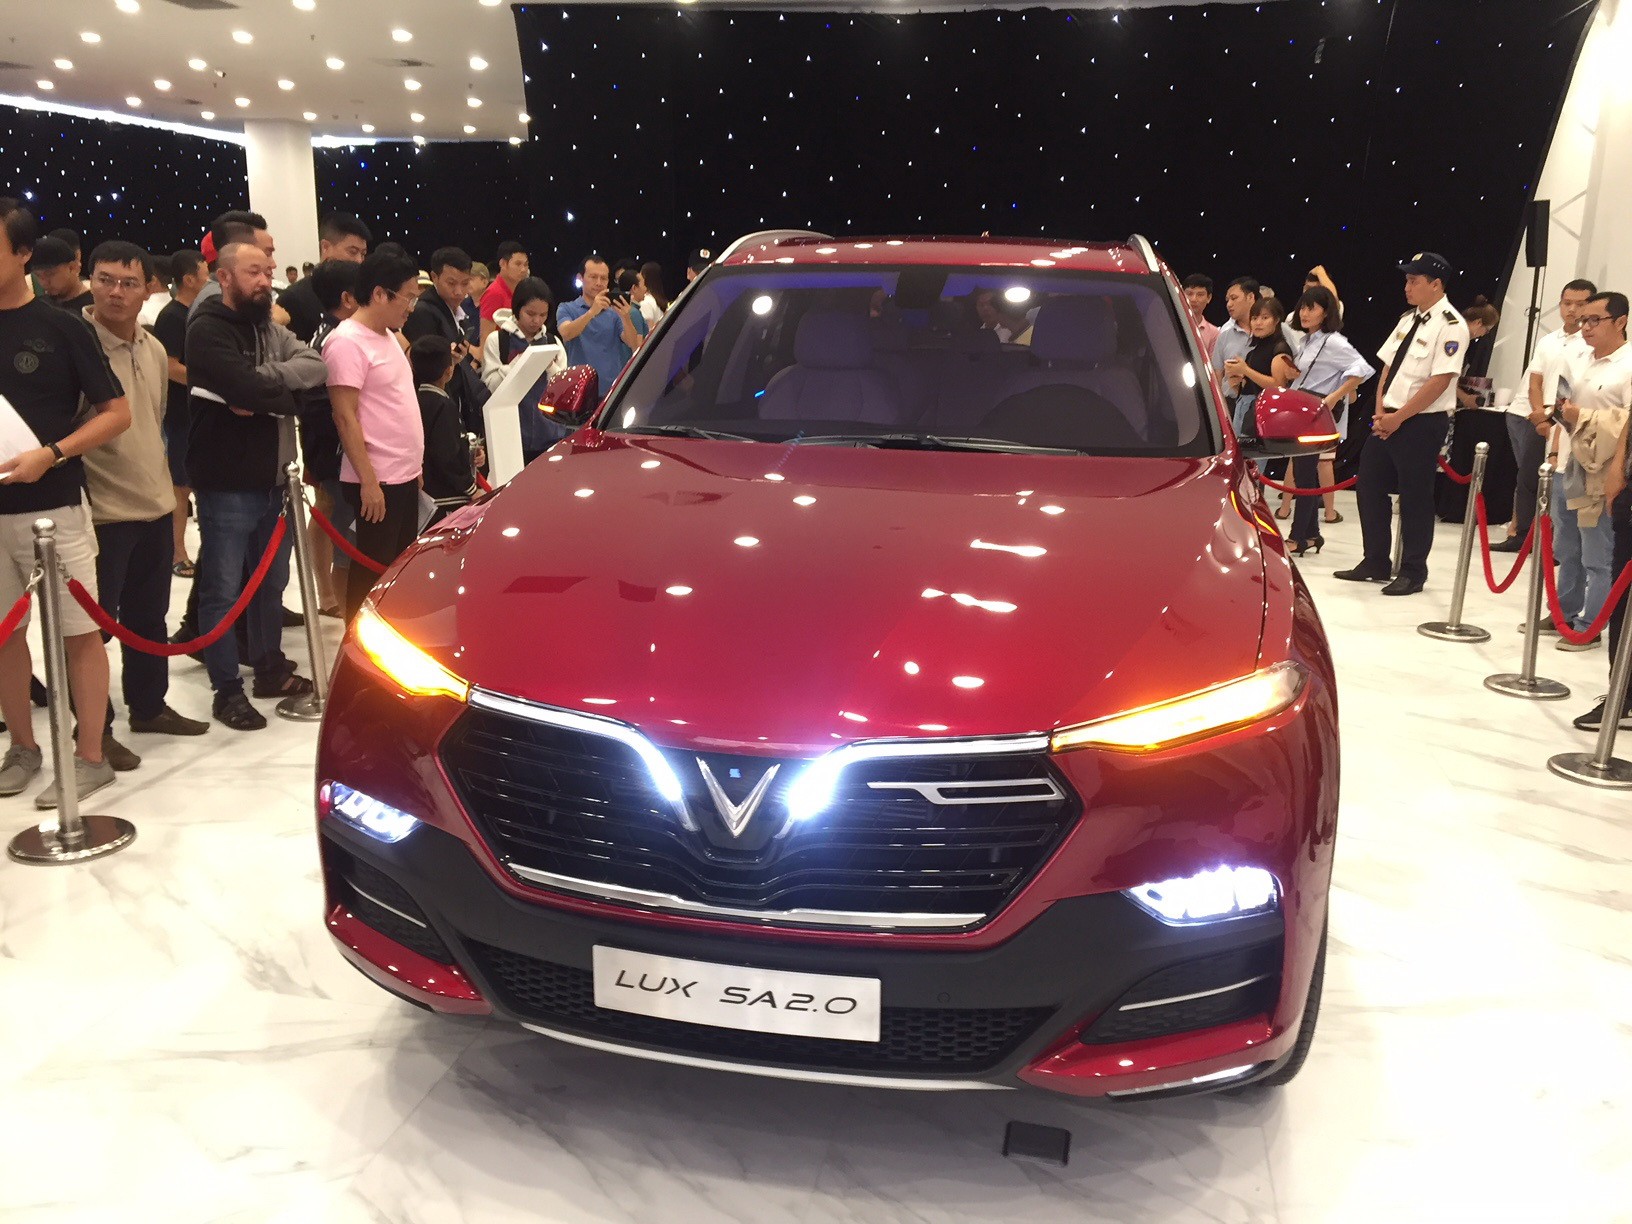 Những mẫu ô tô VinFast mang phong cách hiện đại, sang trọng và tiện nghi đang là tâm điểm của ngành công nghiệp ô tô Việt Nam. Hãy khám phá thêm về chúng qua những hình ảnh đầy ấn tượng và cảm nhận sự đột phá trong thiết kế và công nghệ.